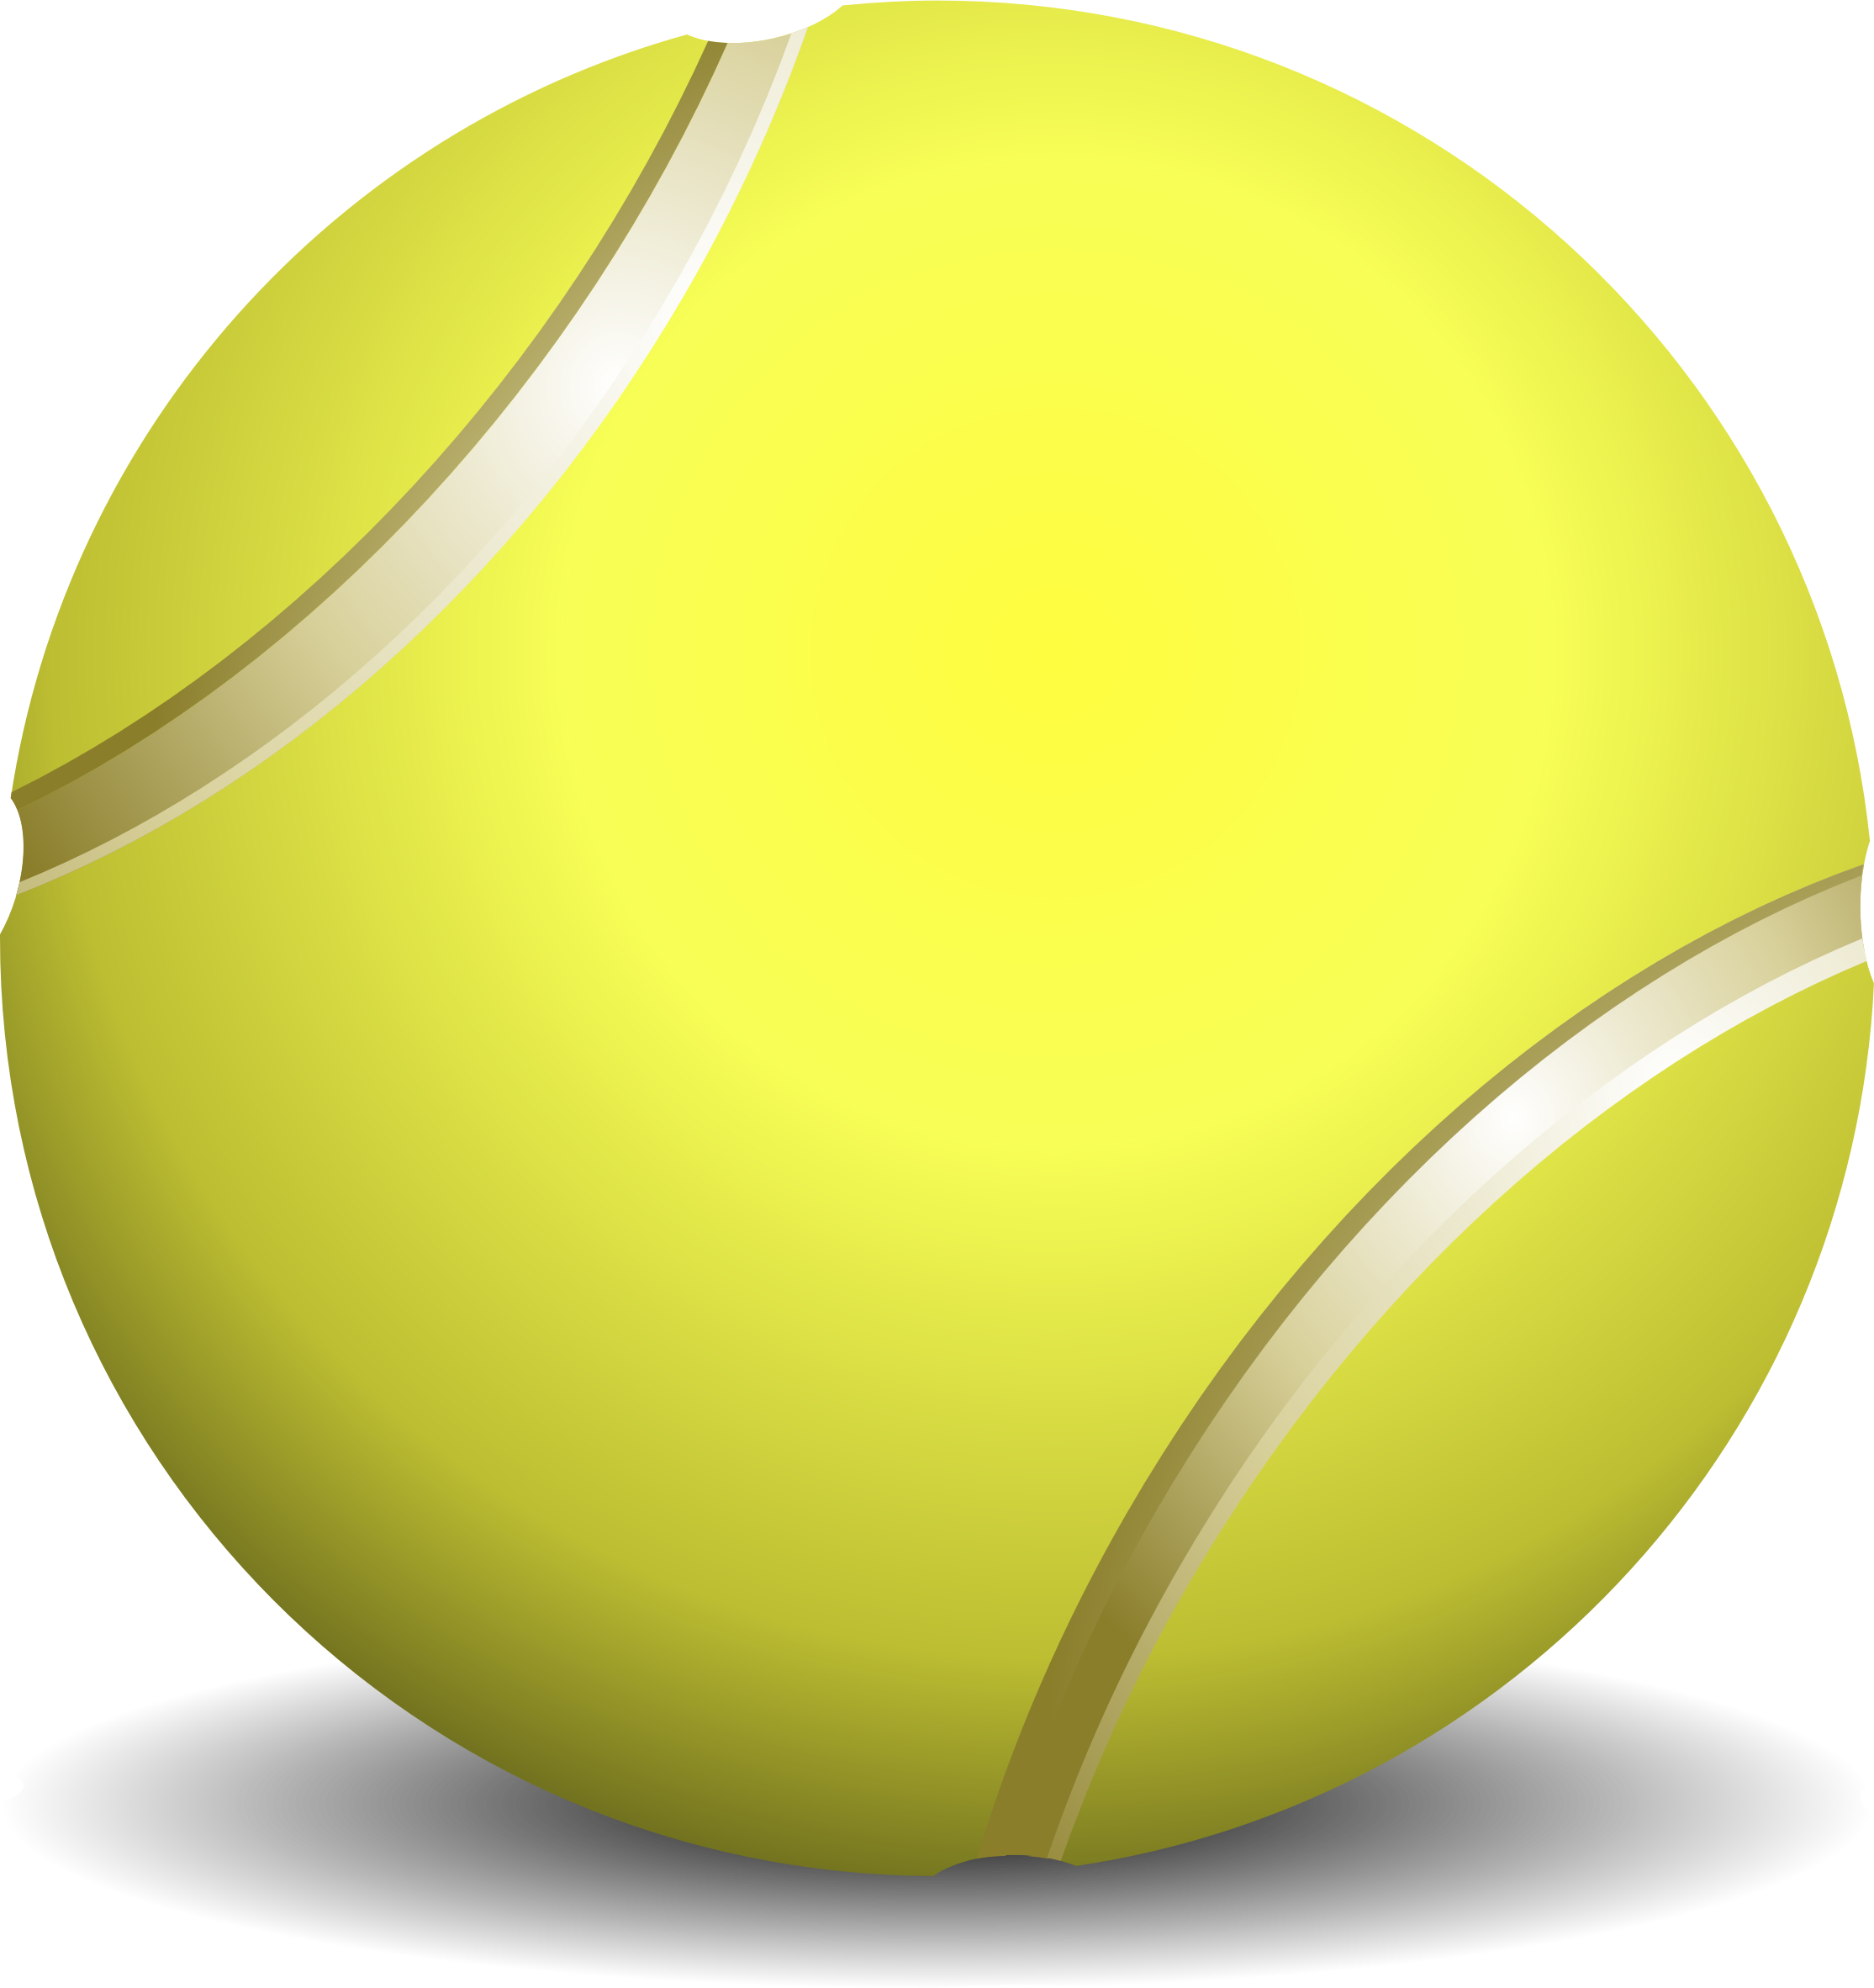 bouncing tennis ball clipart